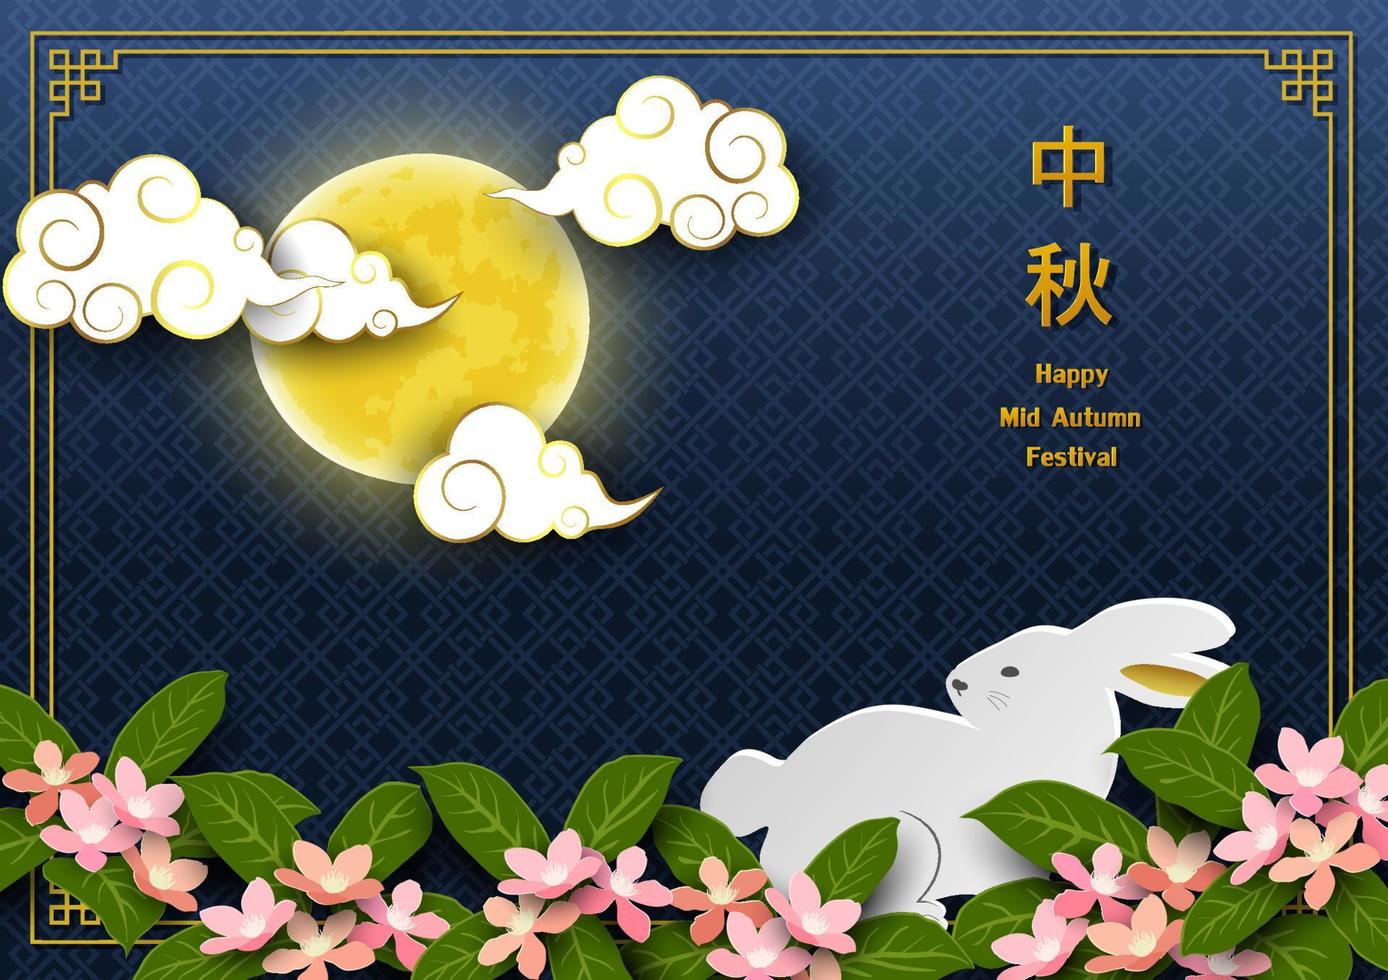 hälsning kort för mitten höst eller måne festival, asiatisk element med full måne, moln, söt kanin och körsbär blomma på blå bakgrund, kinesiska Översätt betyda mitten höst festival vektor